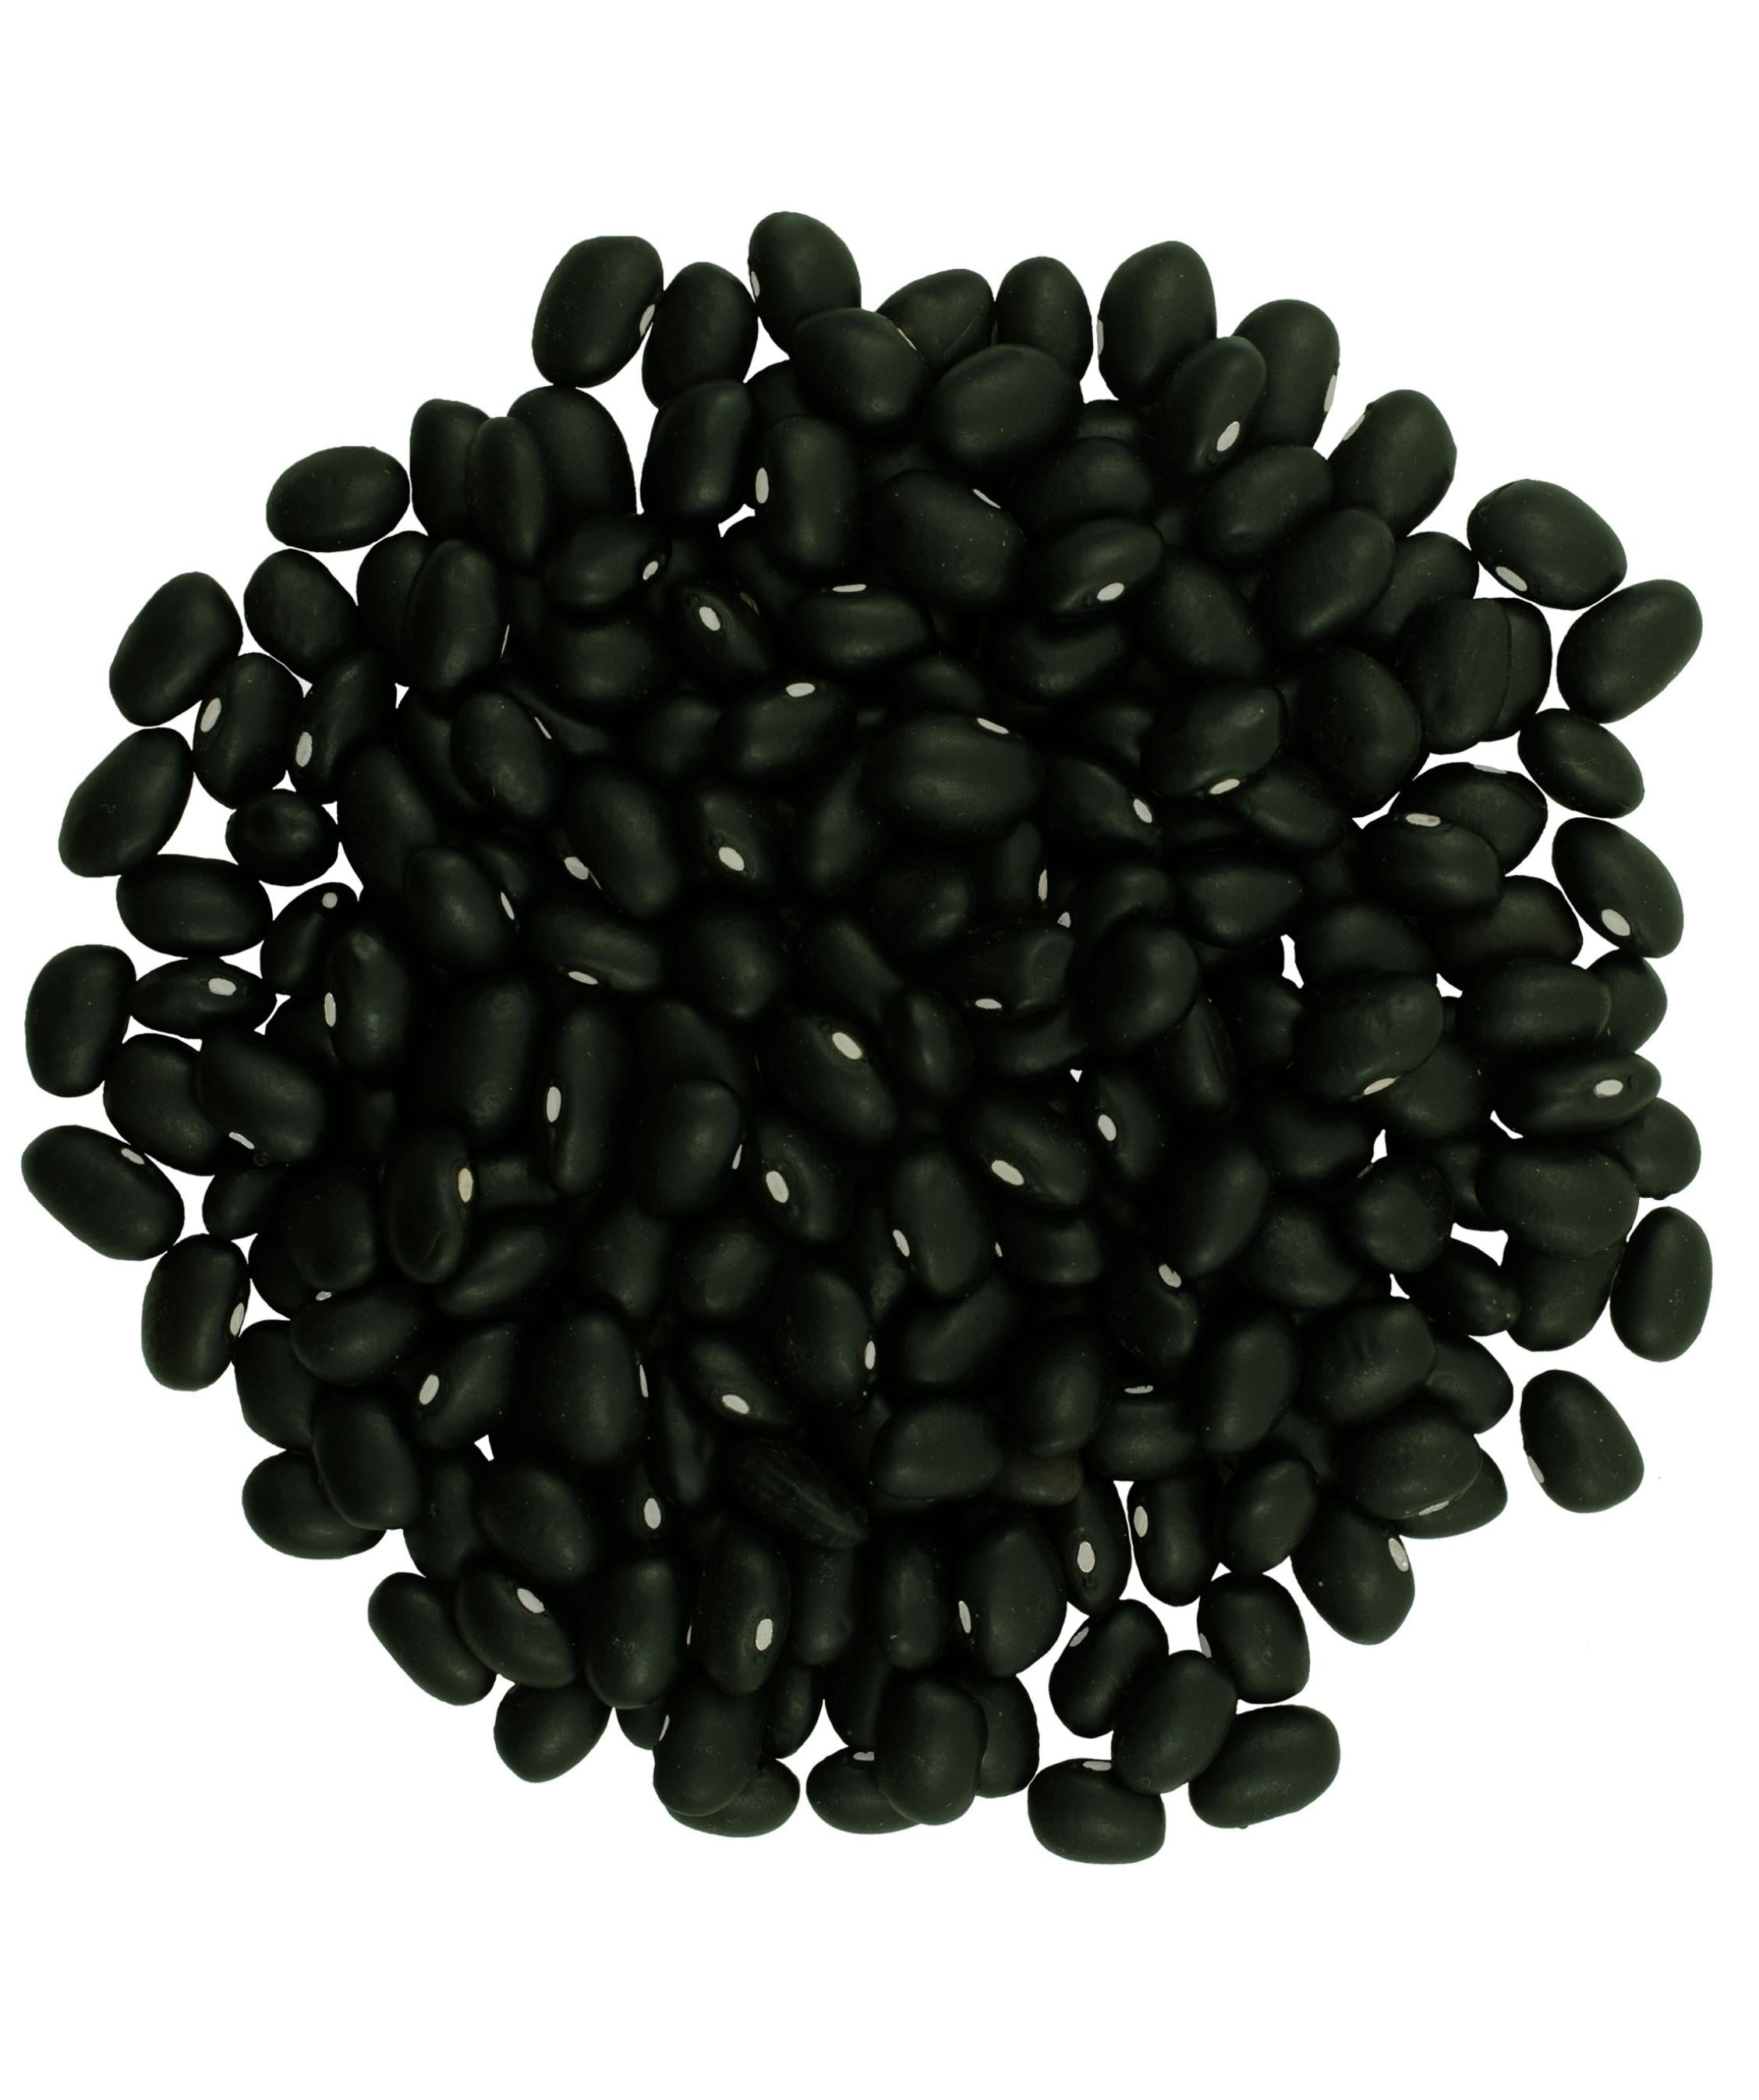 Frijoles Negros | 25 libras